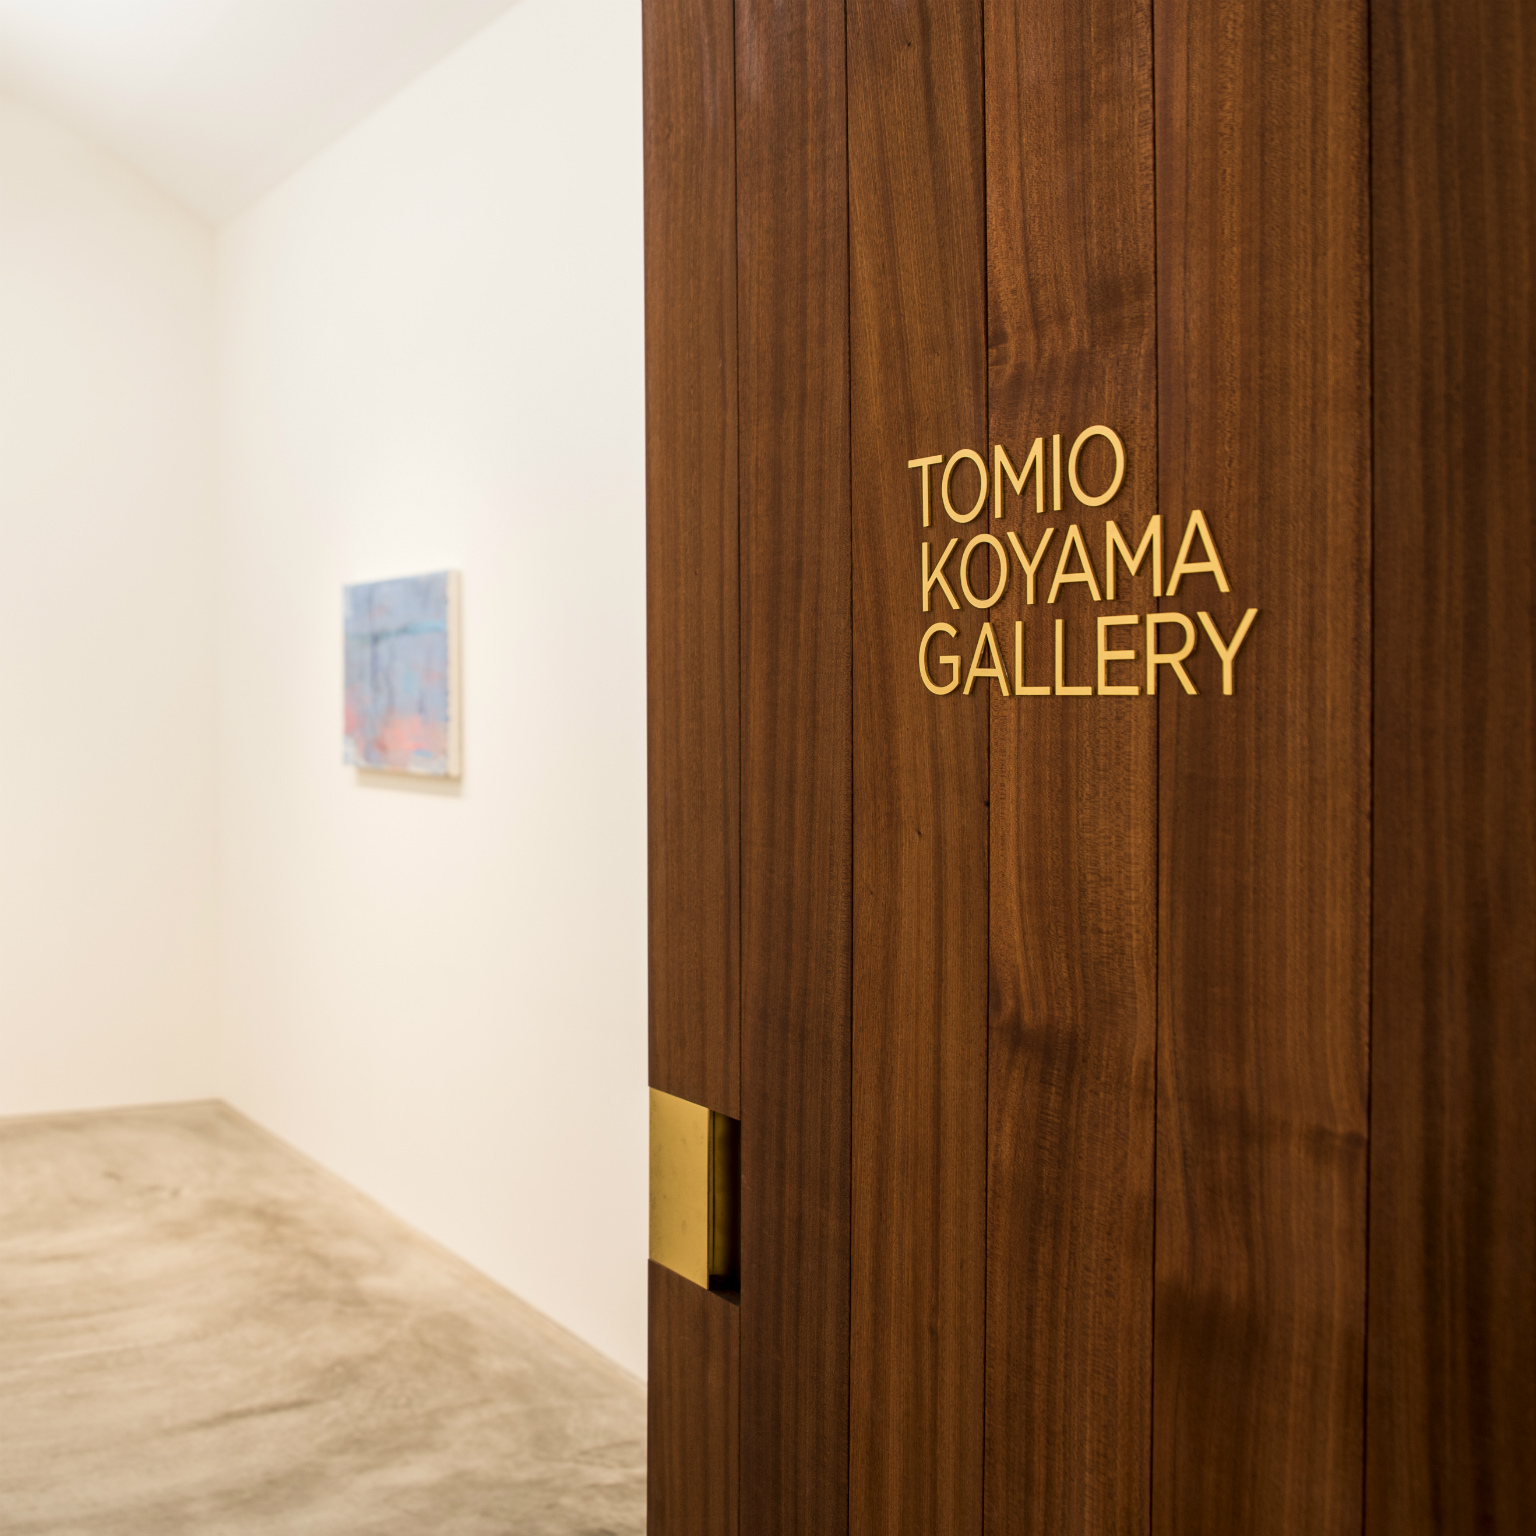 Tomio Koyama